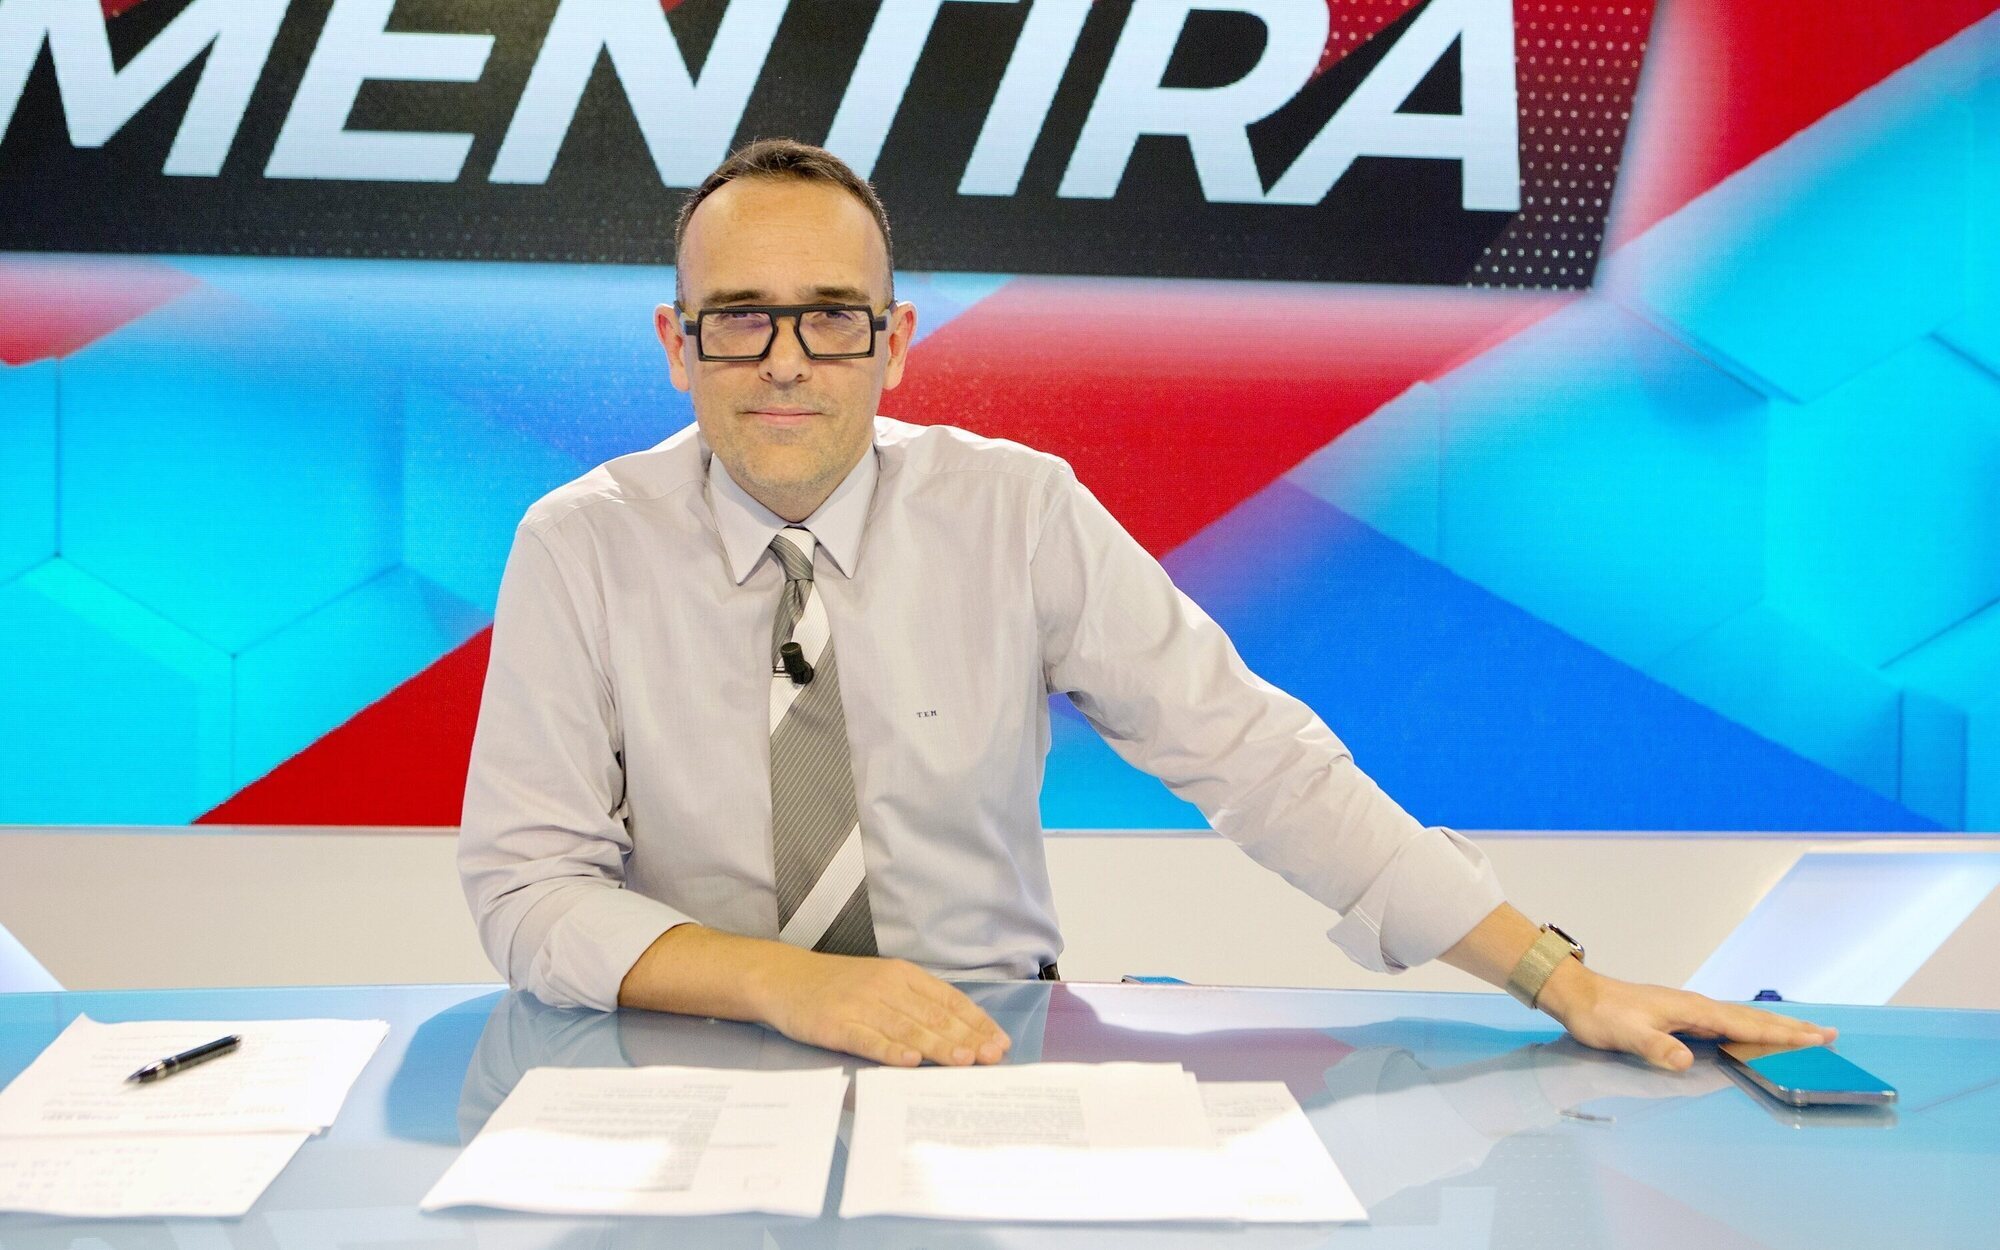 La Fábrica de la Tele desaparece de Mediaset: Risto Mejide producirá 'Todo es mentira' y 'Chester' con Vodevil TV